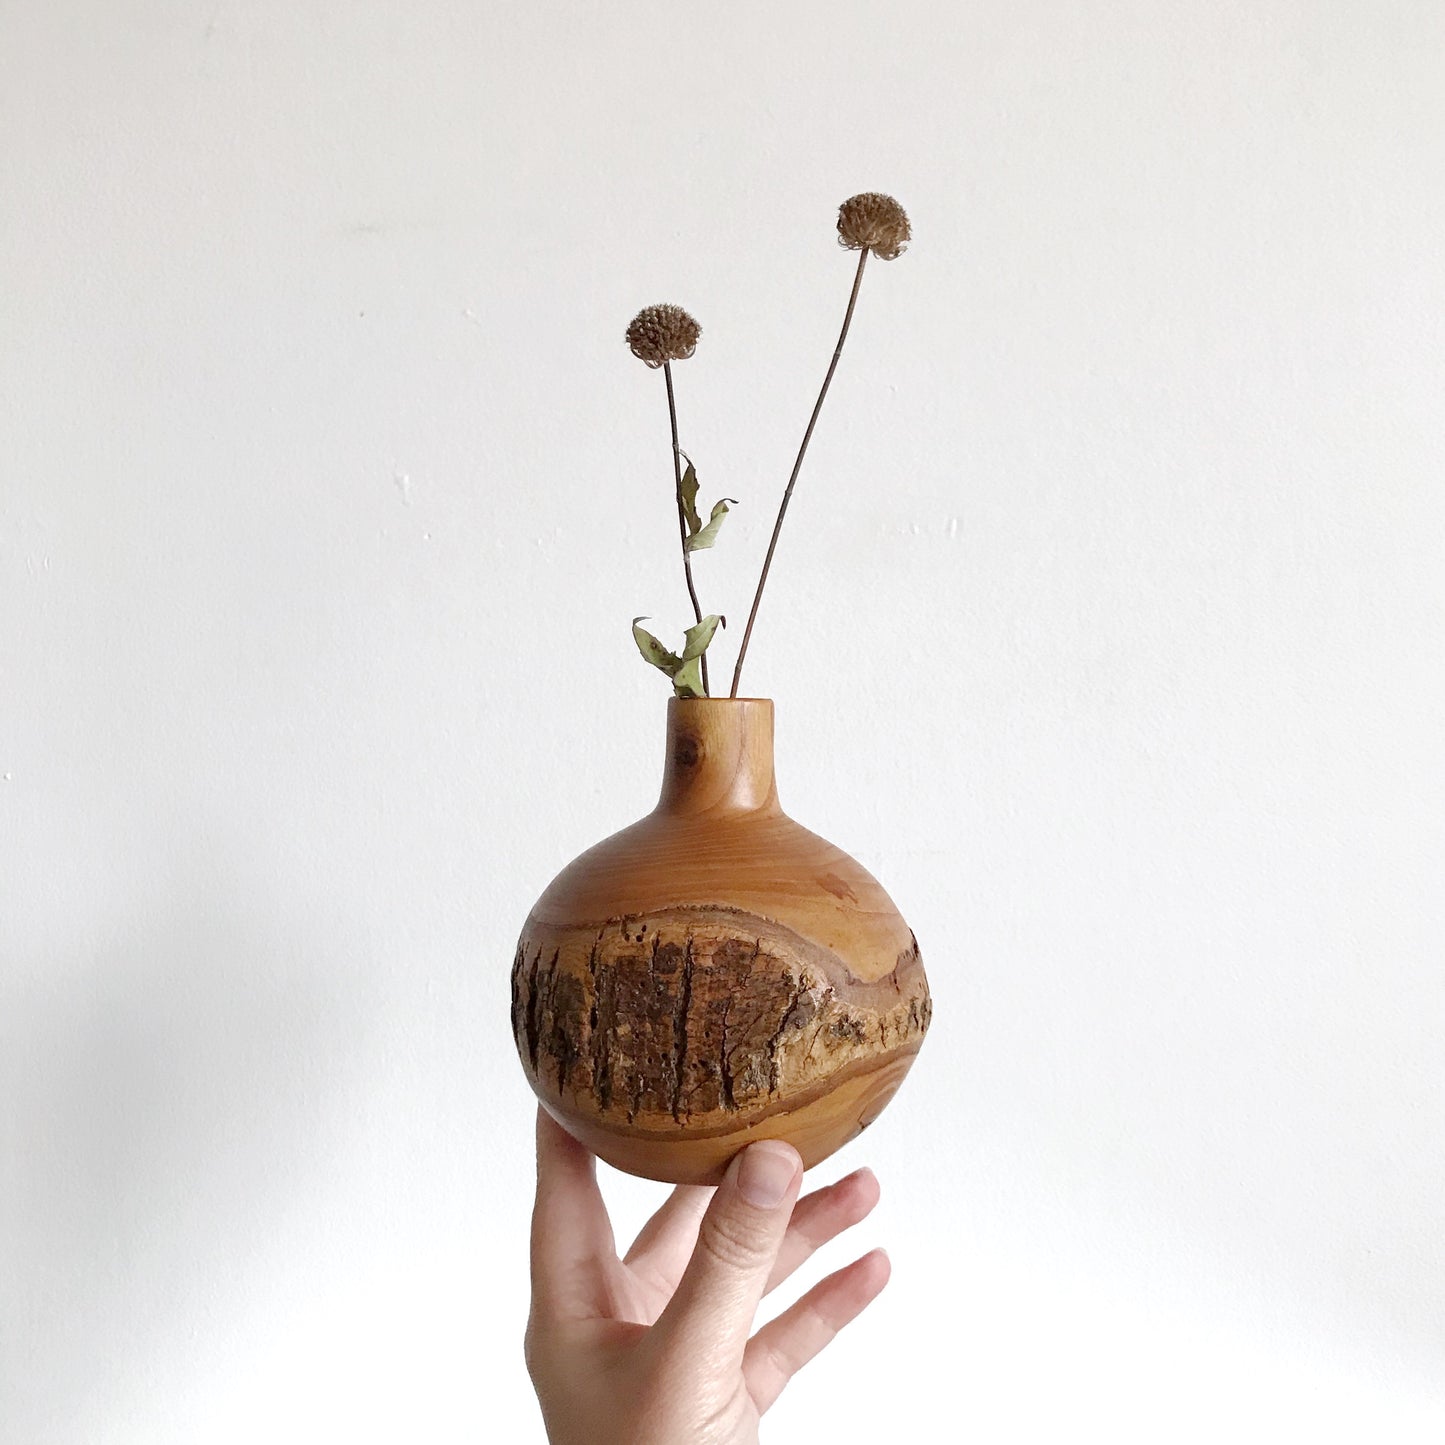 Turned Wood Vase with Bark